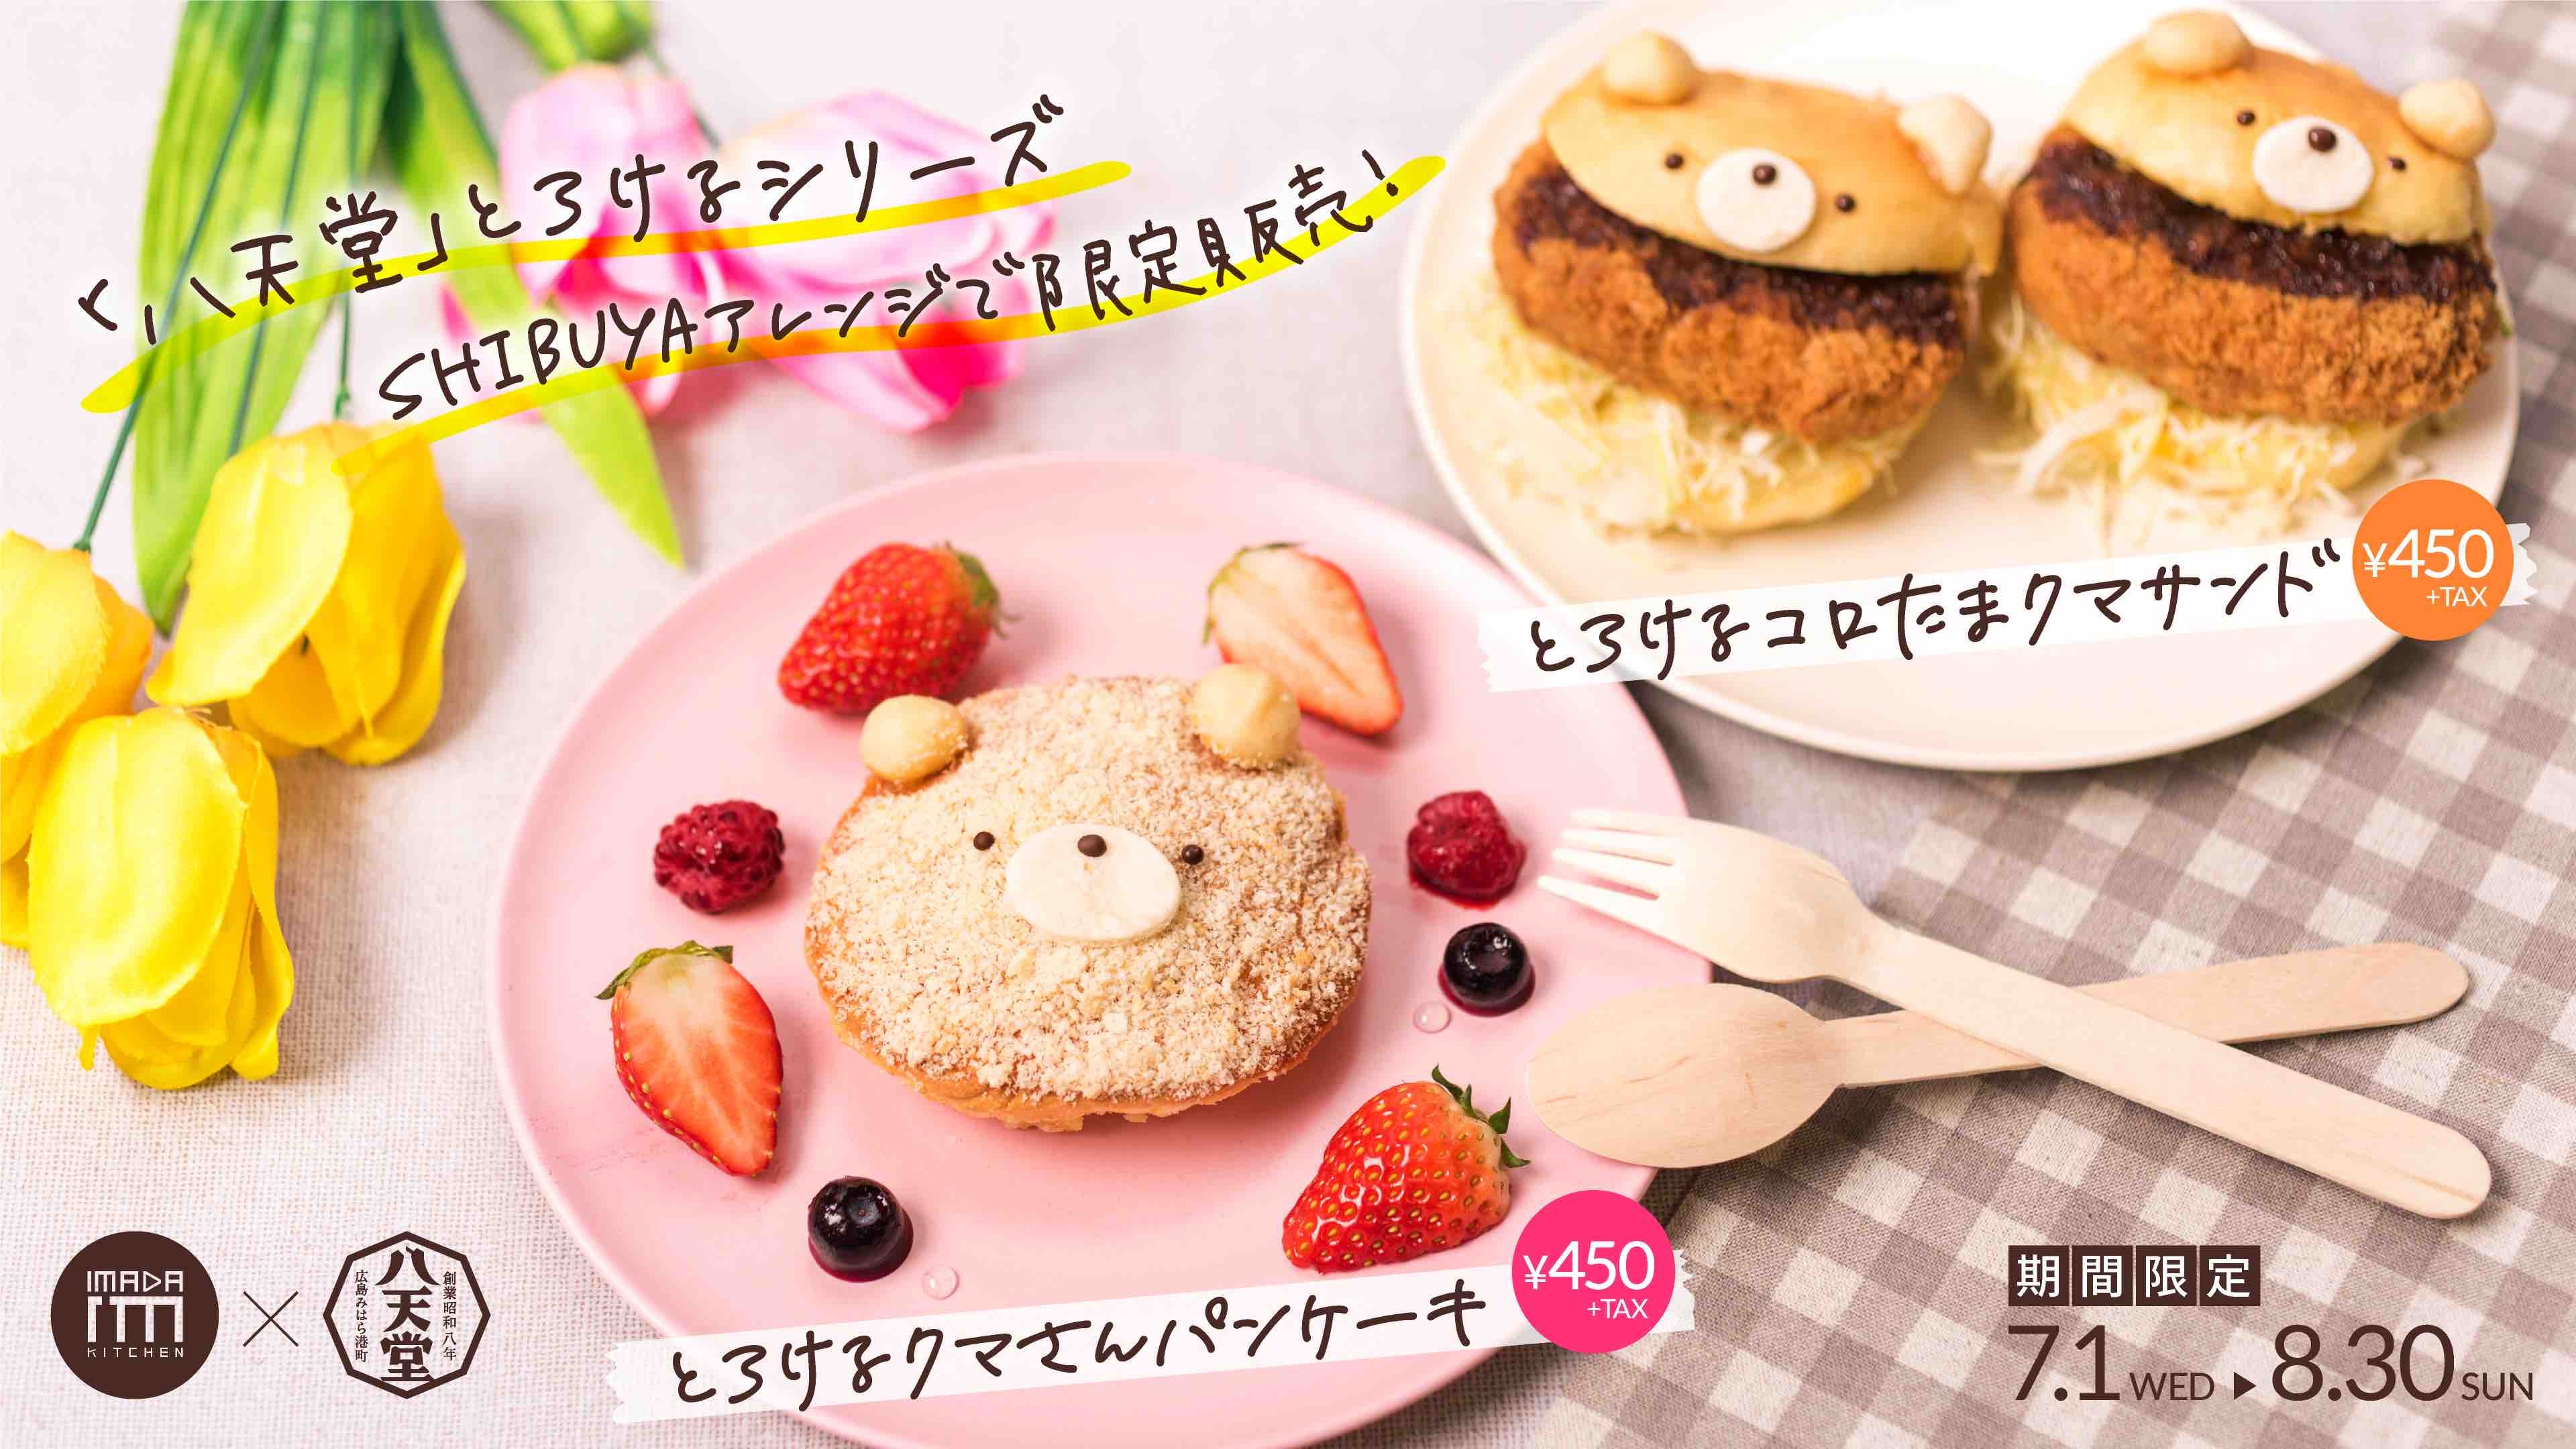 くりーむパンの老舗ブランド八天堂が10年の歳月をかけて開発 Shibuya109渋谷で とろけるクマさんパン ケーキ を販売 株式会社shibuya109エンタテイメントのプレスリリース